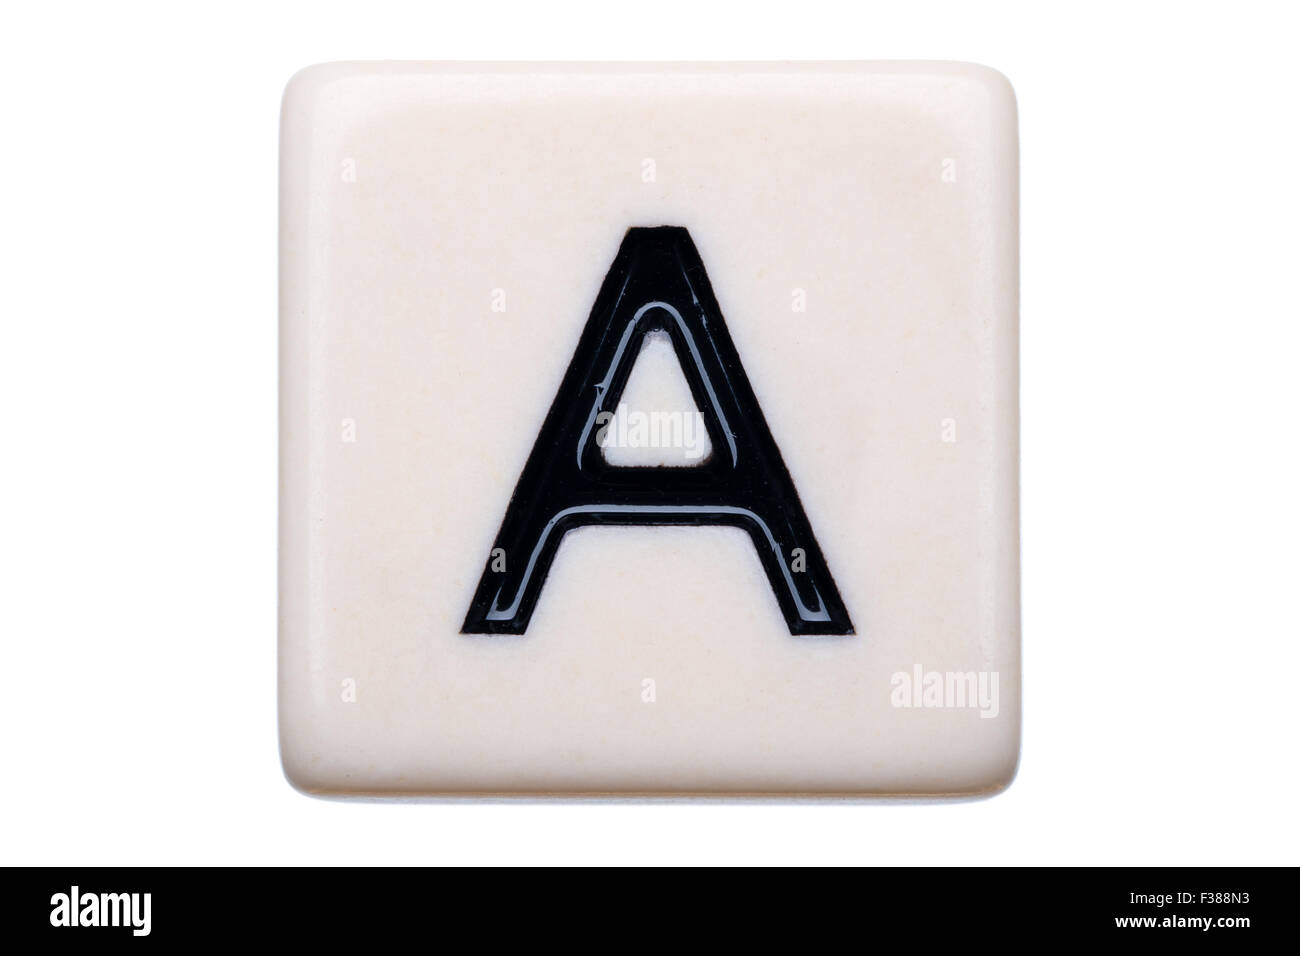 Eine Makroaufnahme einer Spiel Kachel mit dem Buchstaben A drauf auf einem weißen Hintergrund. Stockfoto